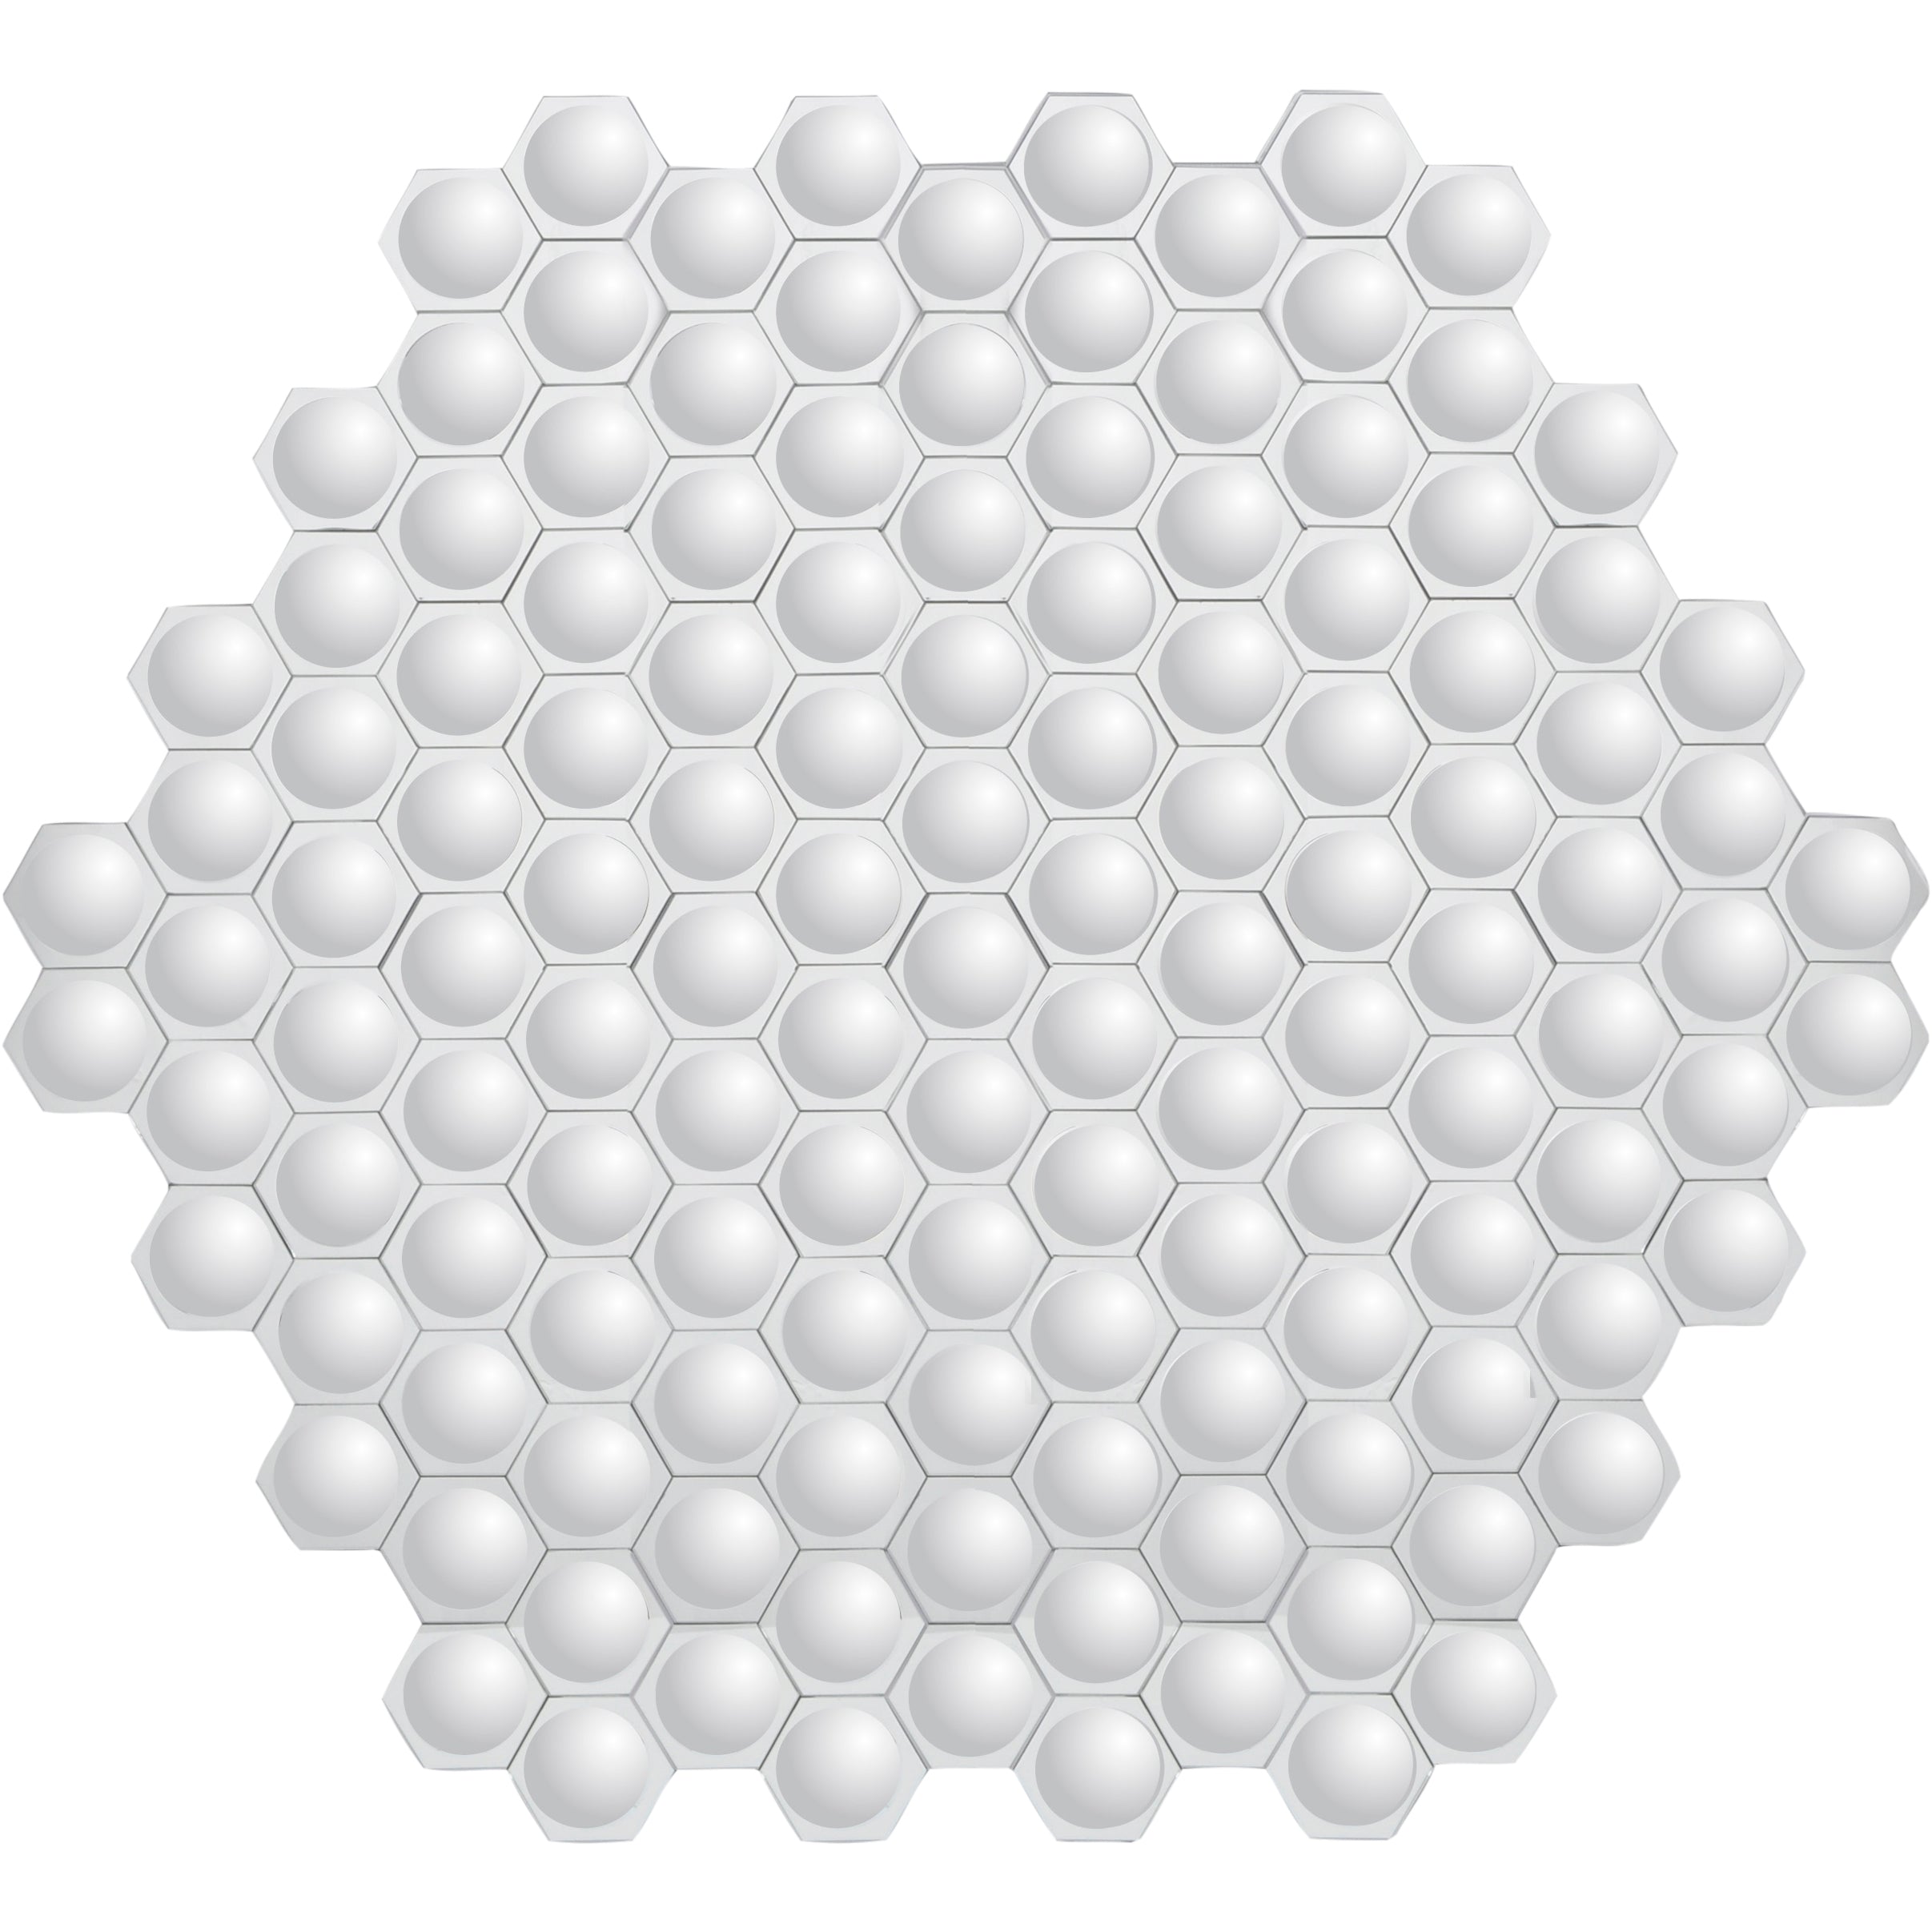 Hexal Honeycomb Convex Mirror Wall Art